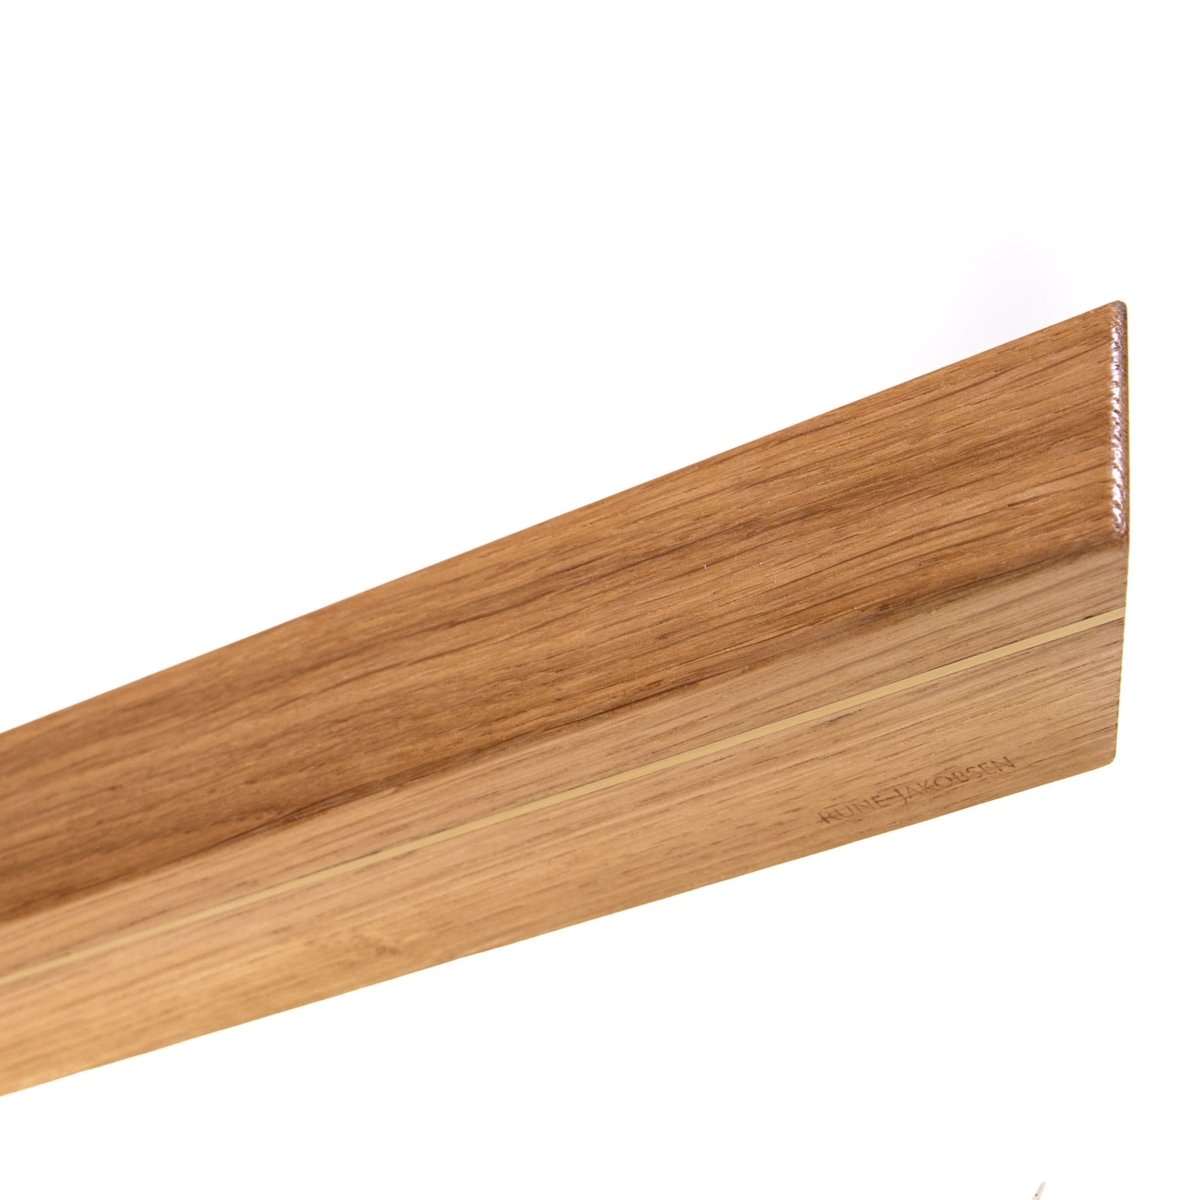 Rune-Jakobsen Woodworks 'Knifeboard Exclusive' dyb knivmagnet_10 by Rune-Jakobsen Design